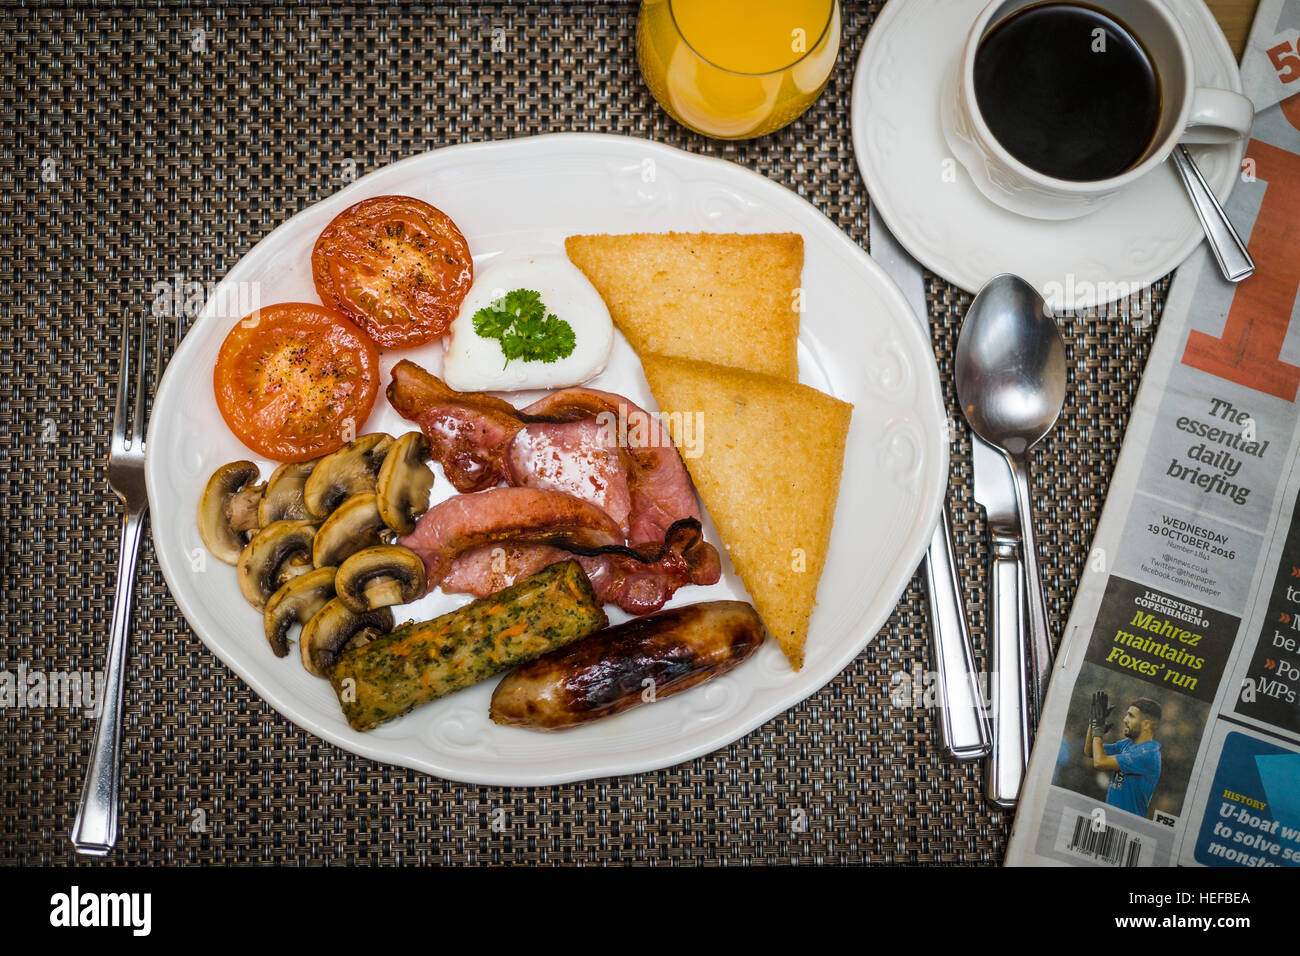 The Full Monty: A gebraten englisches Frühstück auf einem weißen Teller in einem Hotel UK (Speck, Ei, Wurst, Tomaten, Pilze, geröstetes Brot) Tasse Kaffee, Orangensaft und ein Newpaper Stockfoto